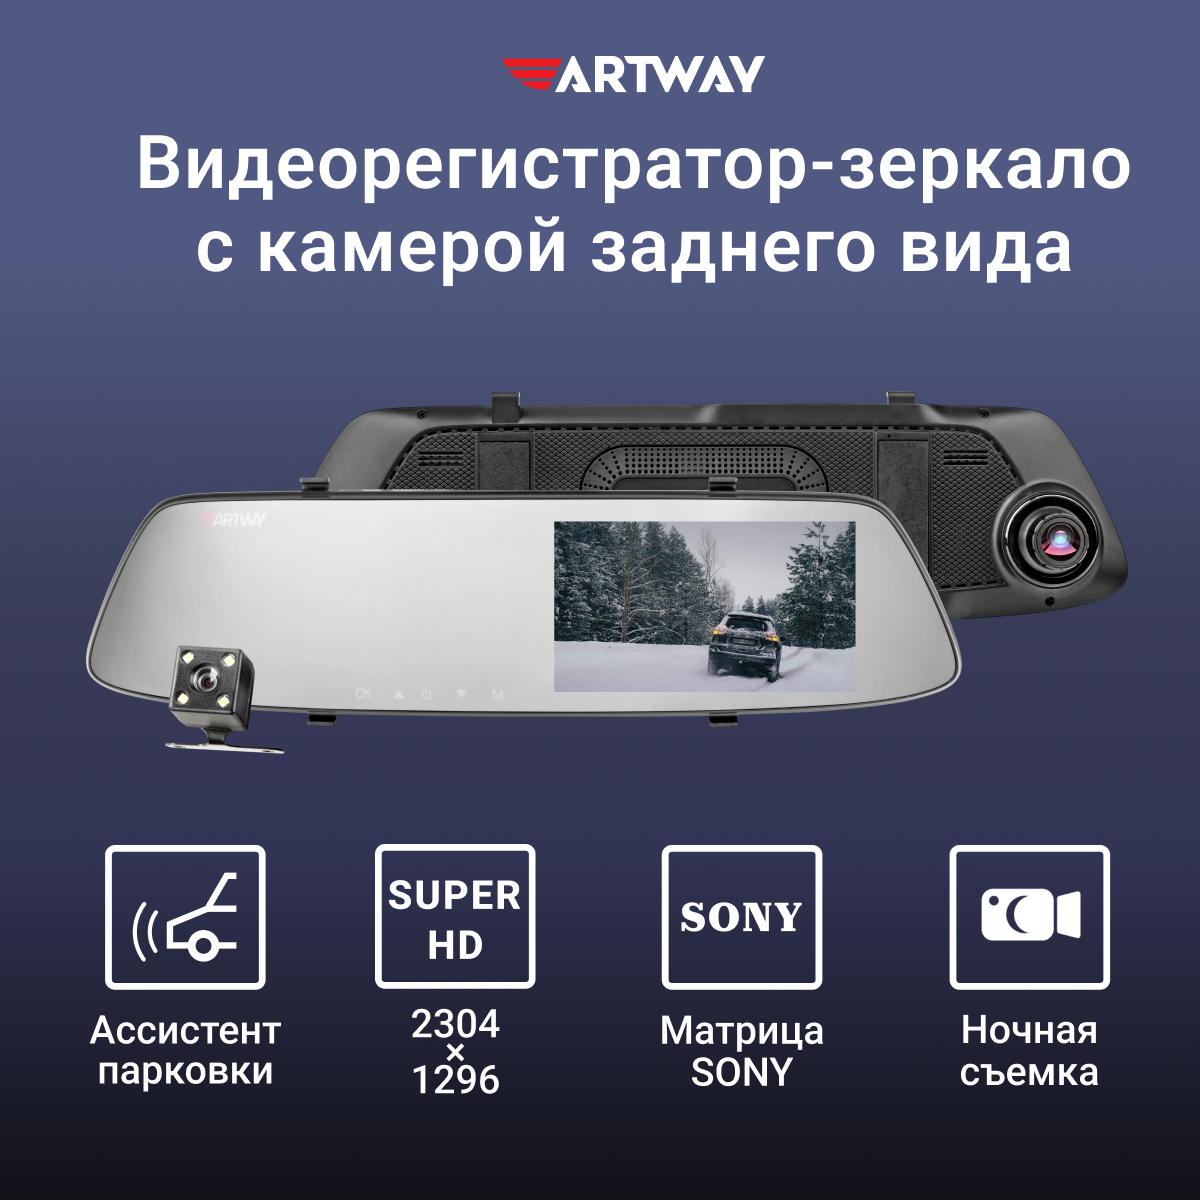 Видеорегистратор зеркало для автомобиля Artway AV-604 с камерой заднего вида